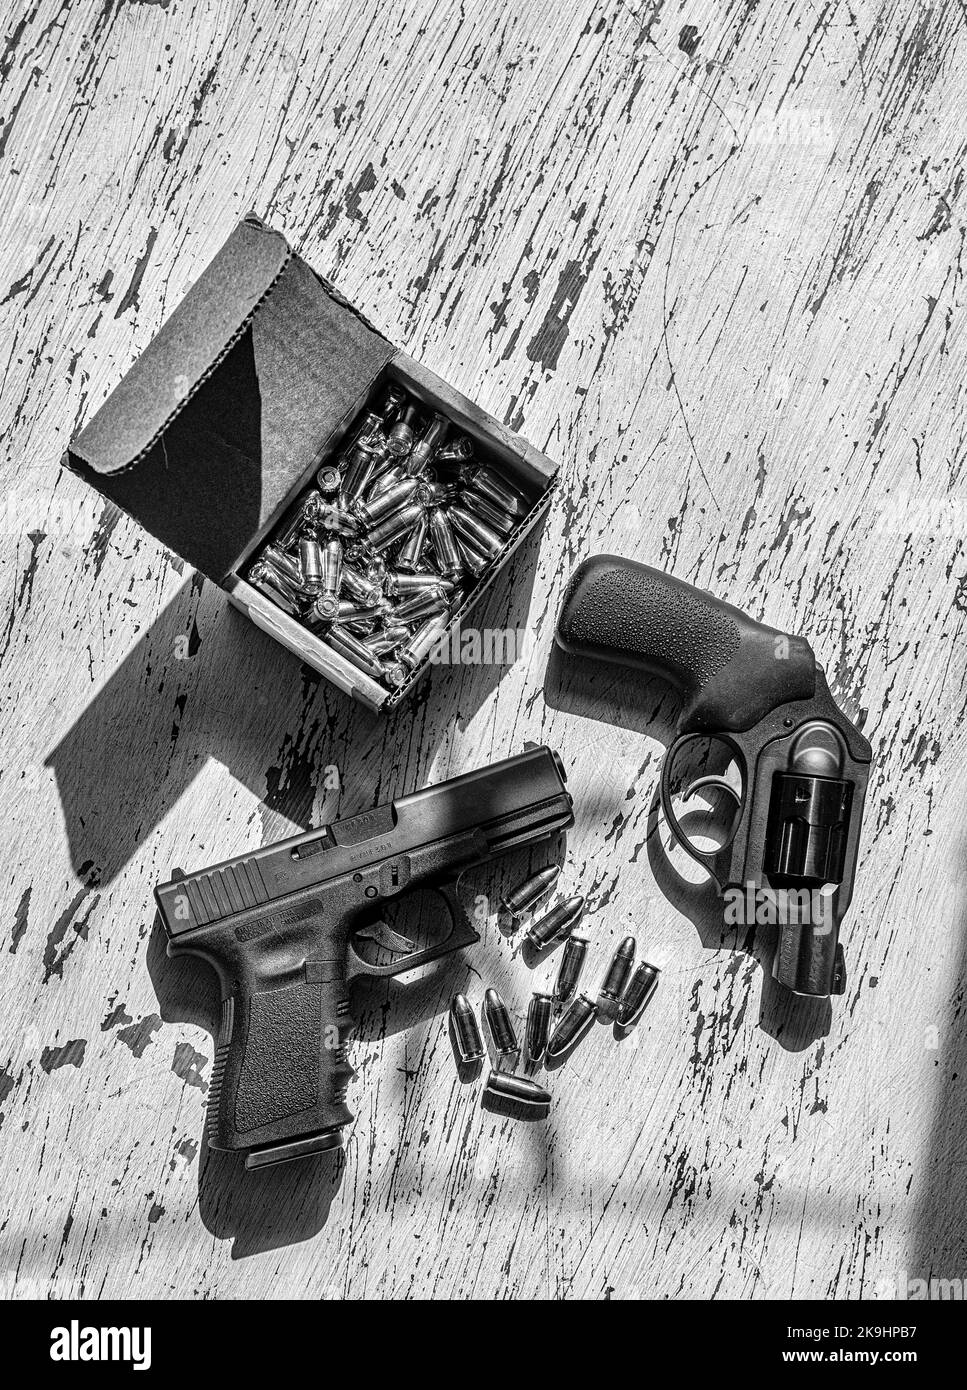 Una pistola semiautomatica 9mm Glck, una revolver Ruger da 9 mm, conchiglie e una scatola di cartucce in una scatola di cartone su un tavolo di legno. Foto Stock